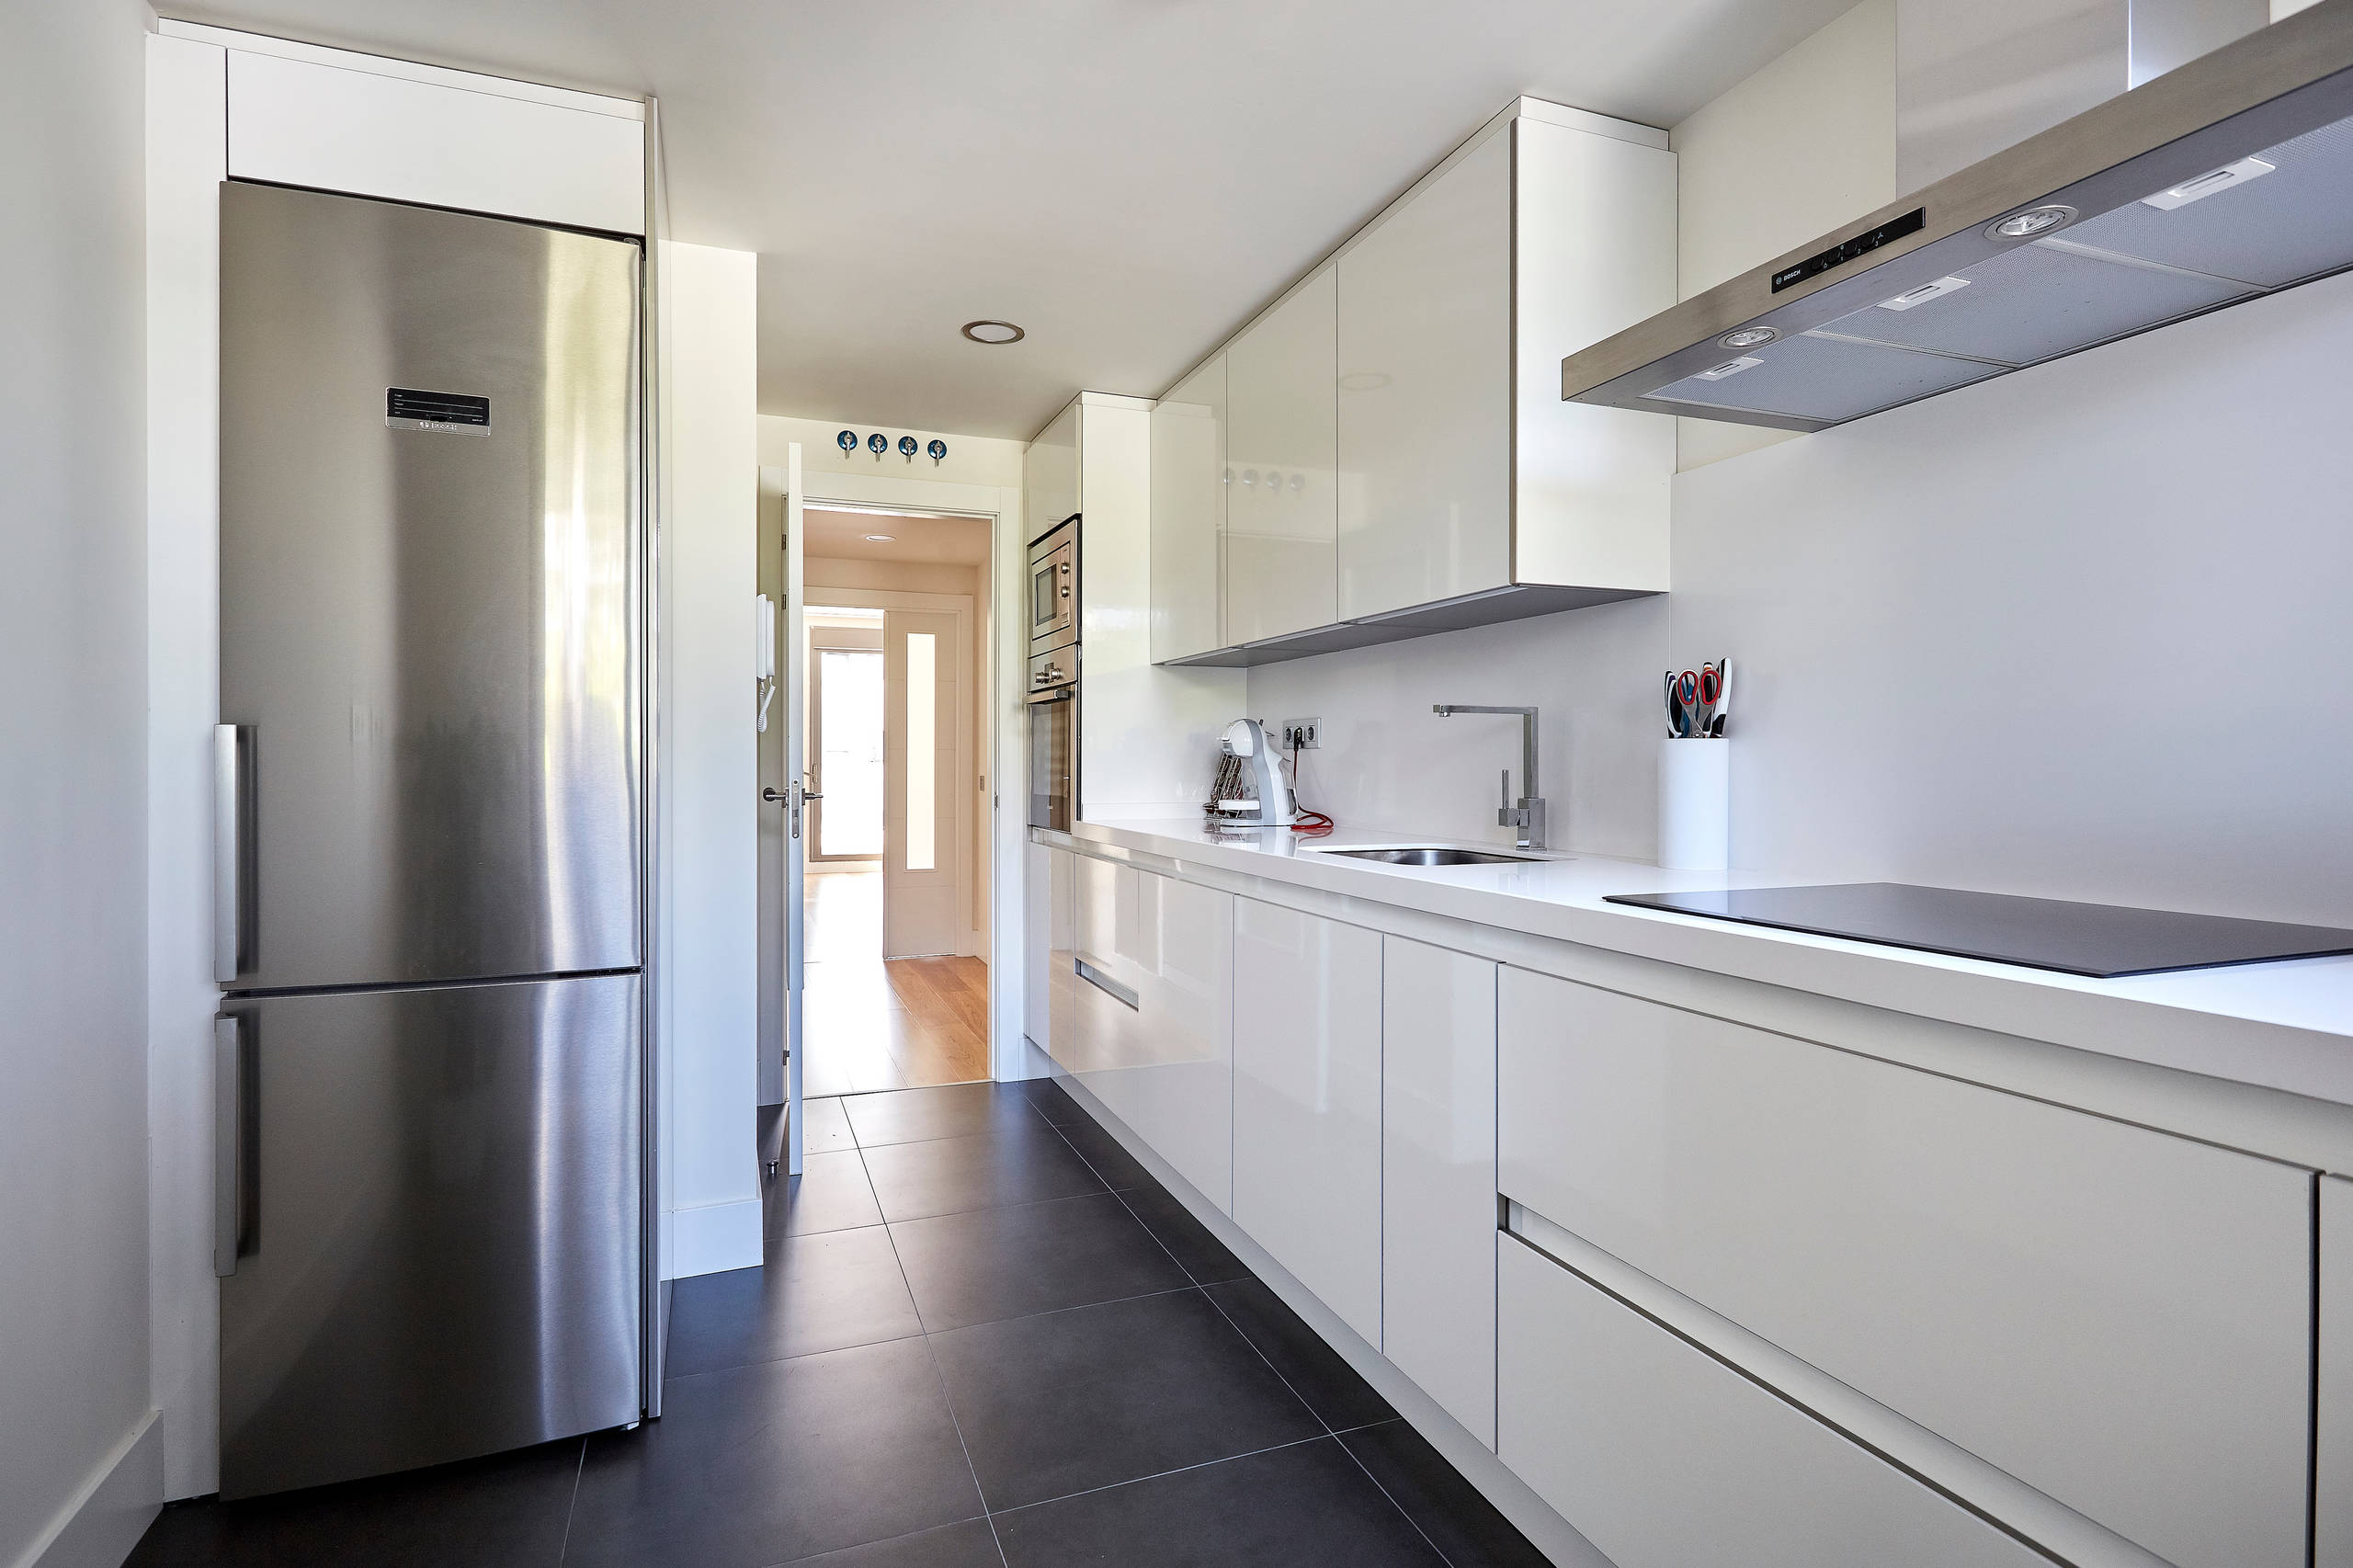 Cocinas minimalistas Ideas para decorar diseños residenciales